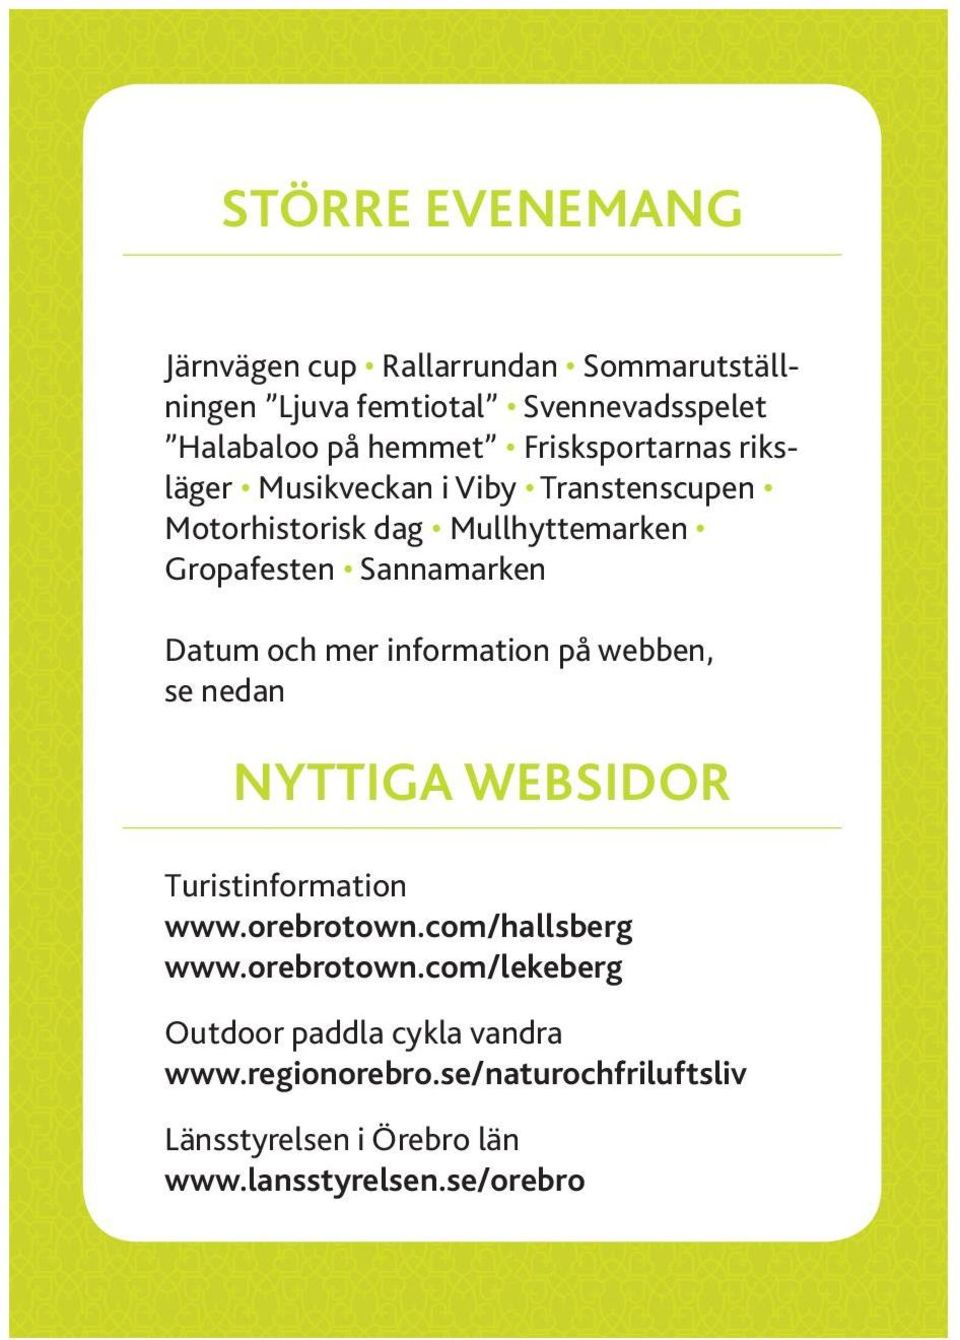 Datum och mer information på webben, se nedan nyttiga websidor Turistinformation www.orebrotown.com/hallsberg www.